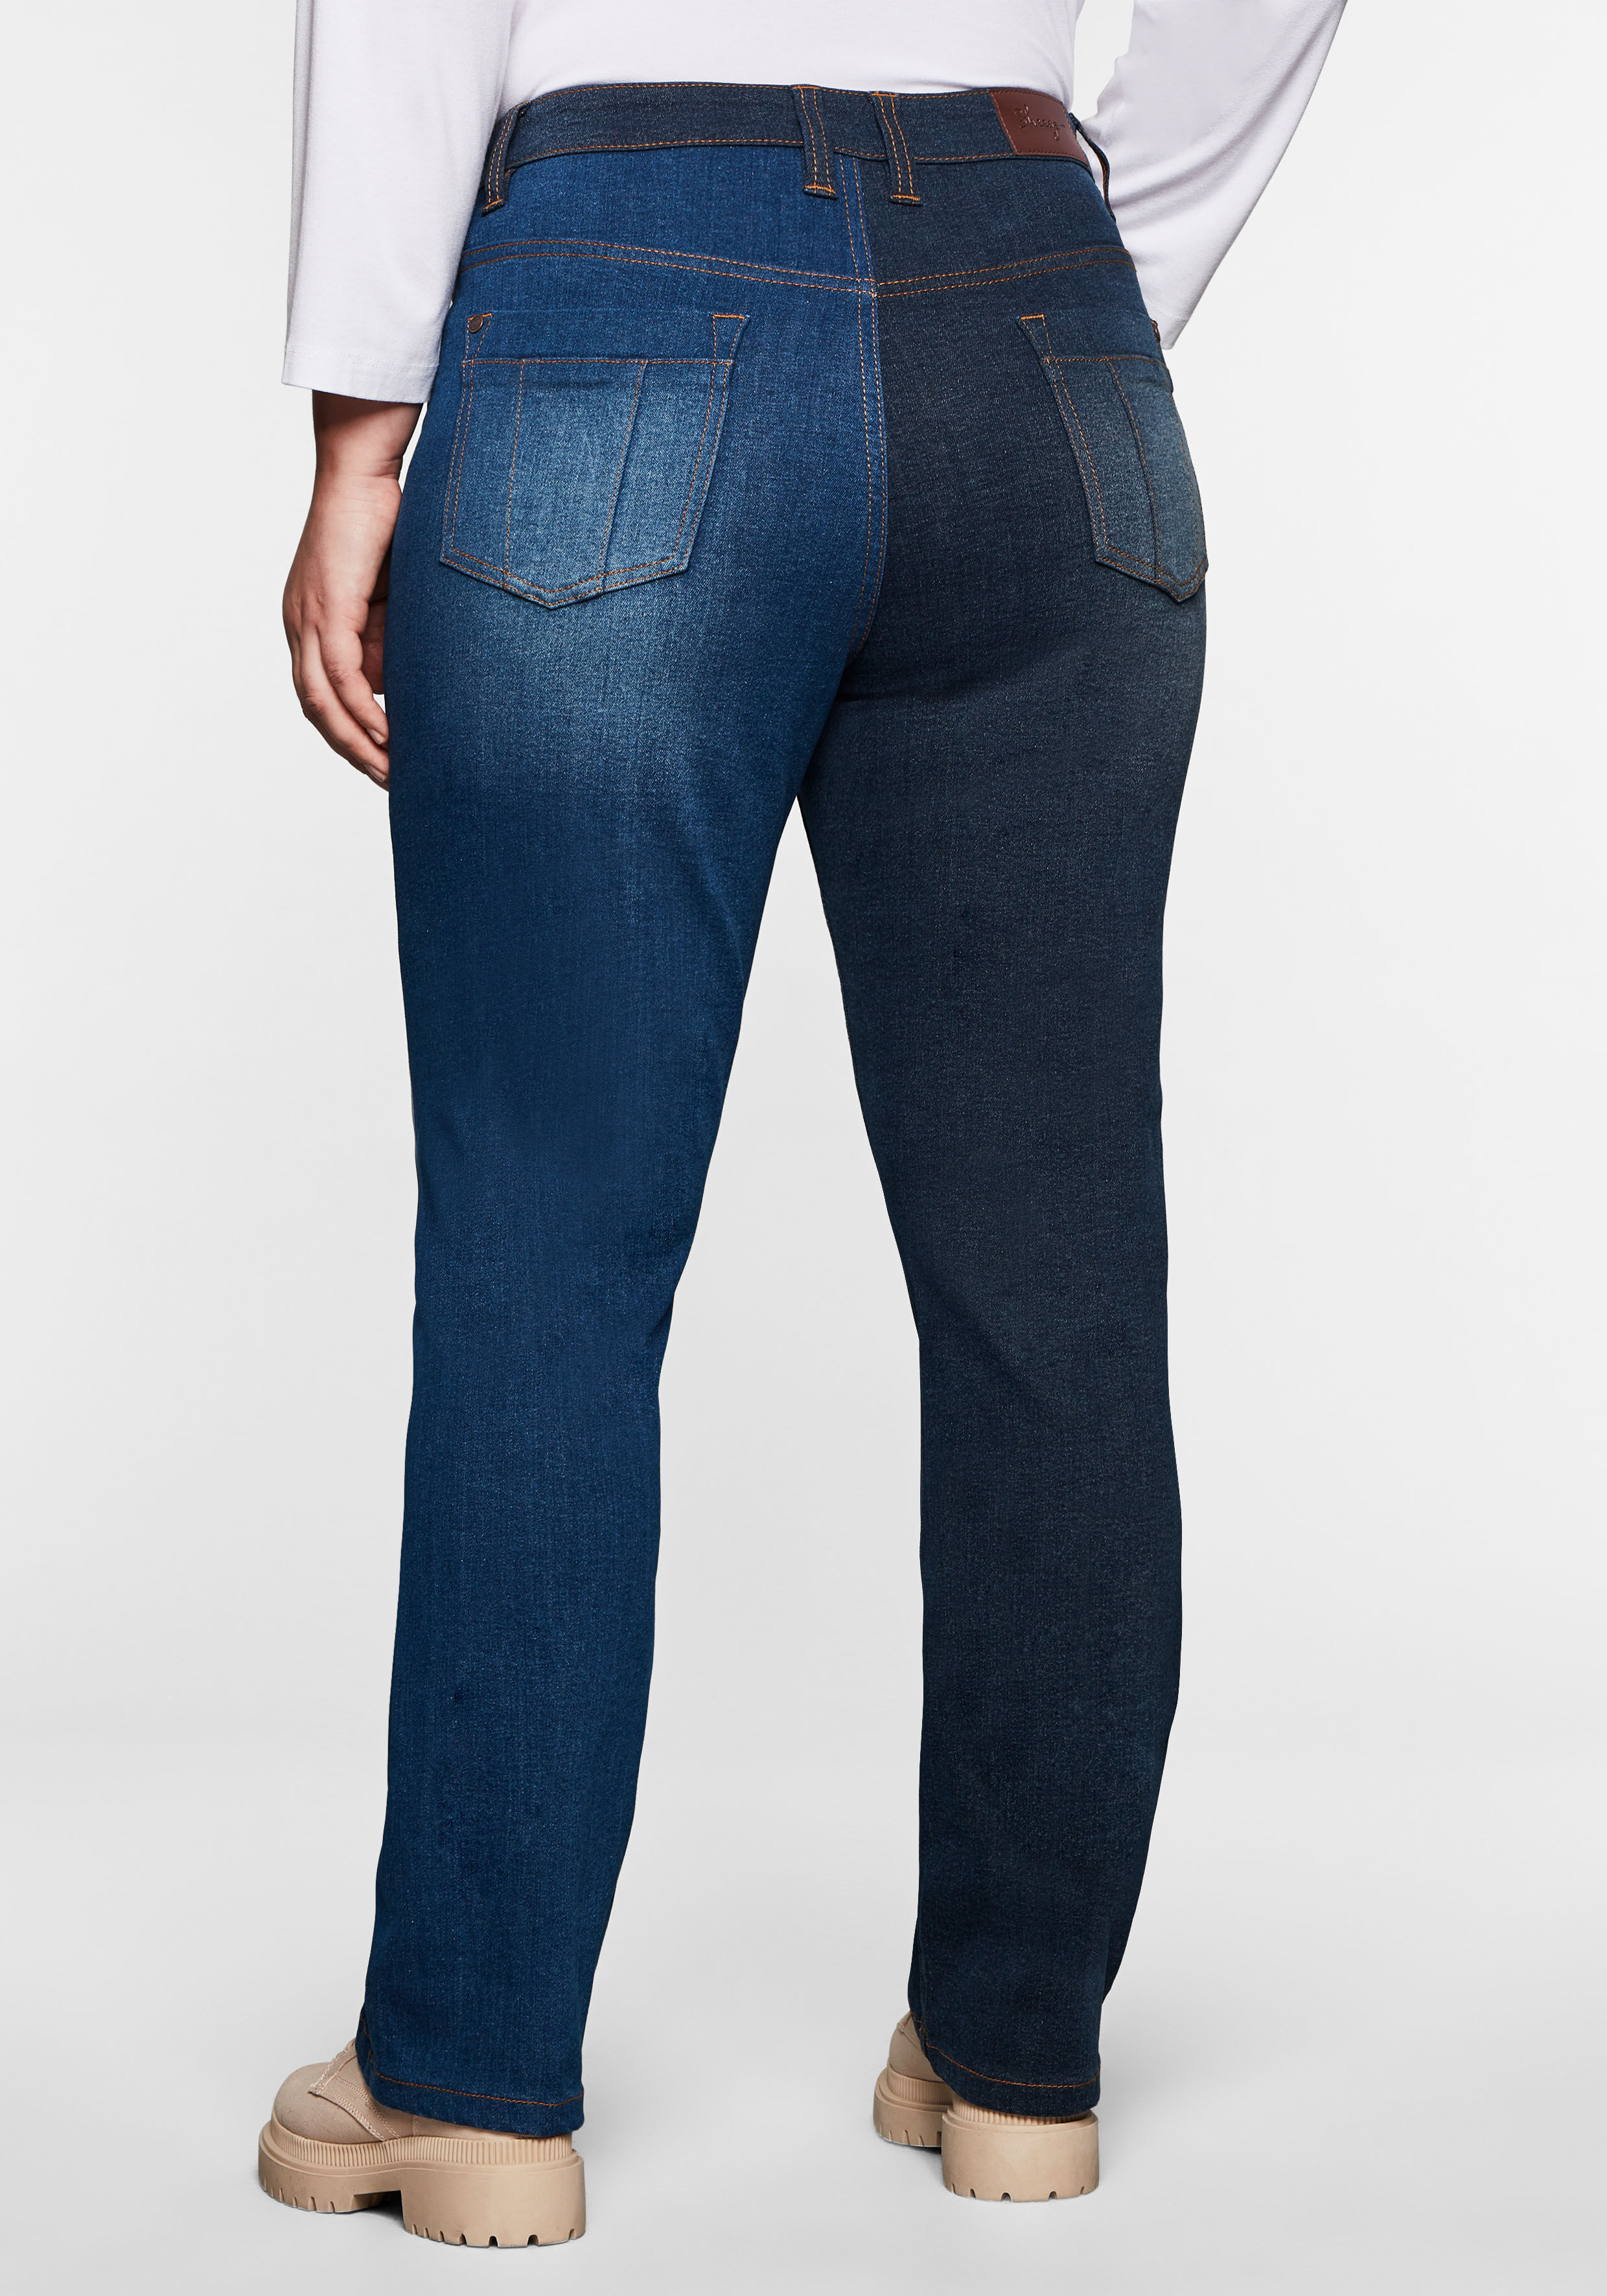 Sheego Gerade Jeans, in Multicolor-Optik blau Größe 40 42 44 46 48 50 52 54 56 58